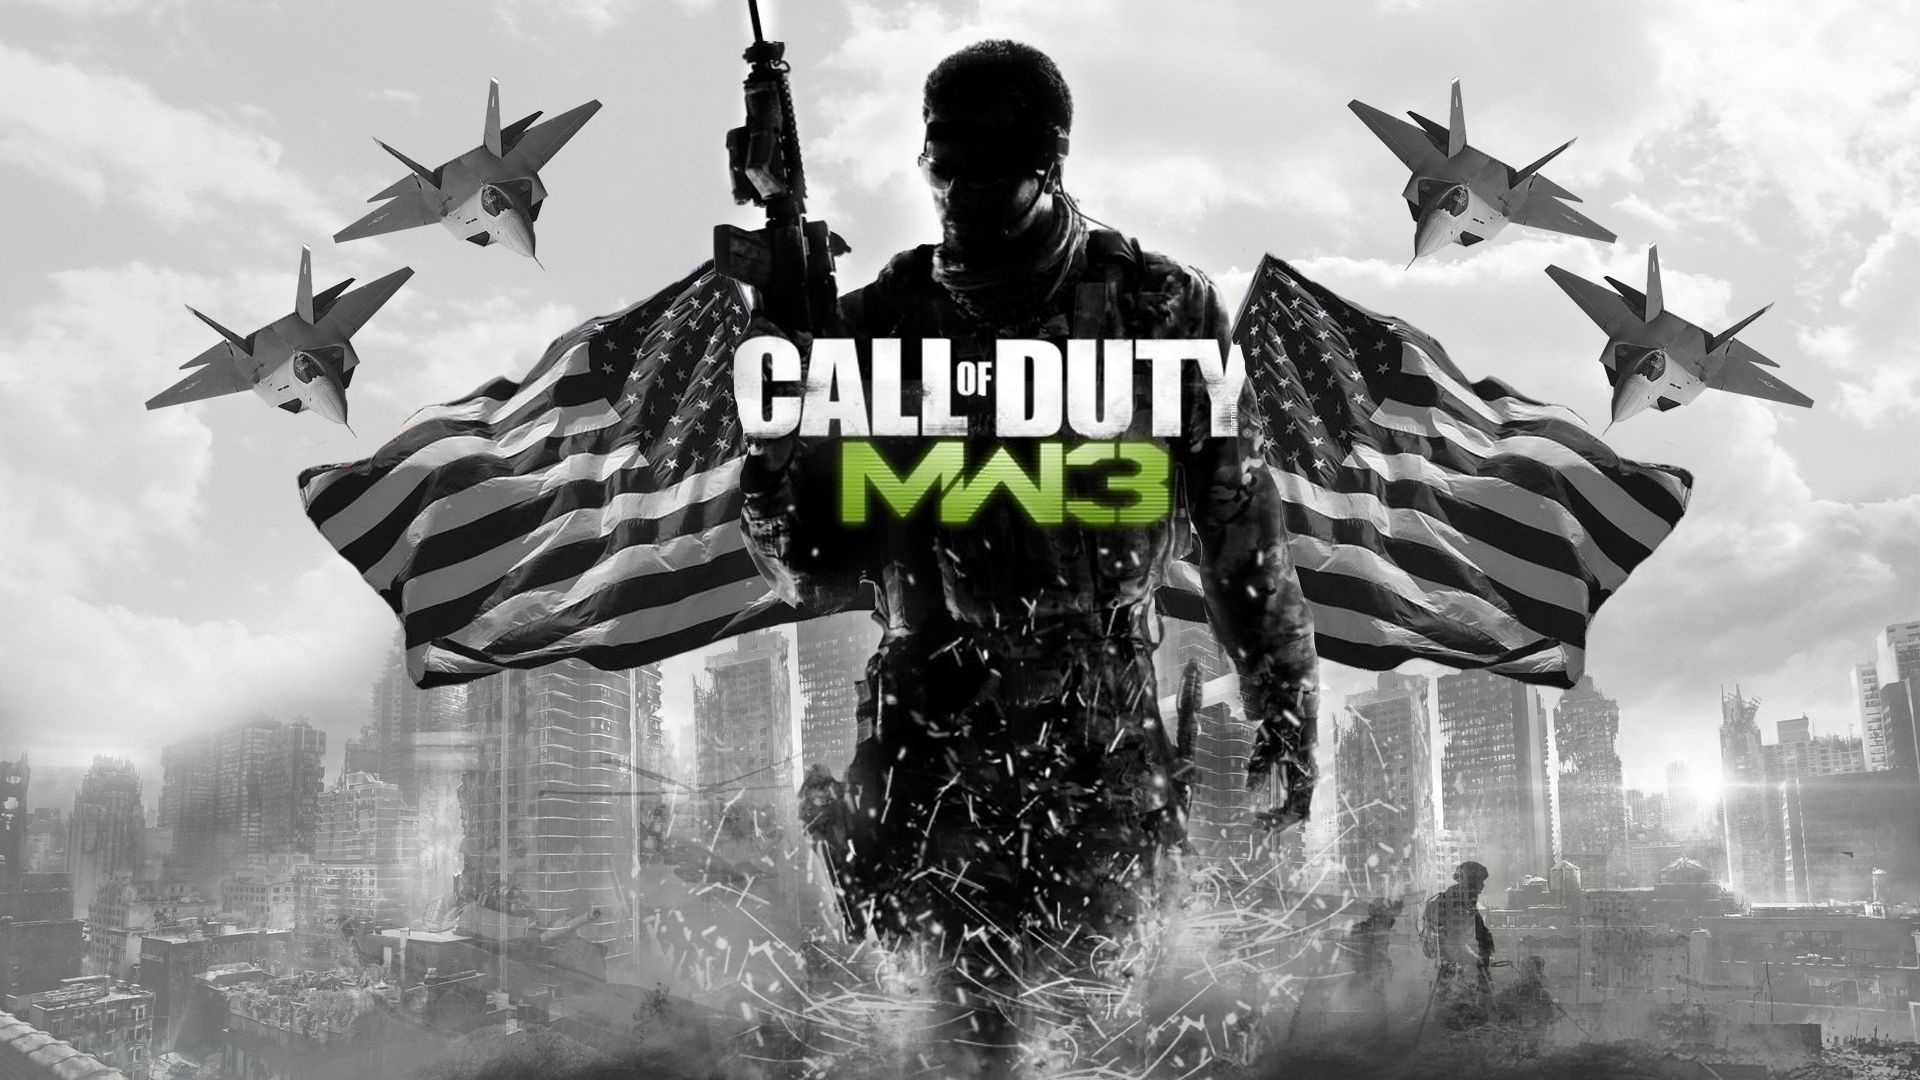 Call of Duty MW3 Wallpaper. Callo Duty Black Ops 2 Wallpaper, Call of Duty Background and Ford Super Duty Wallpaper